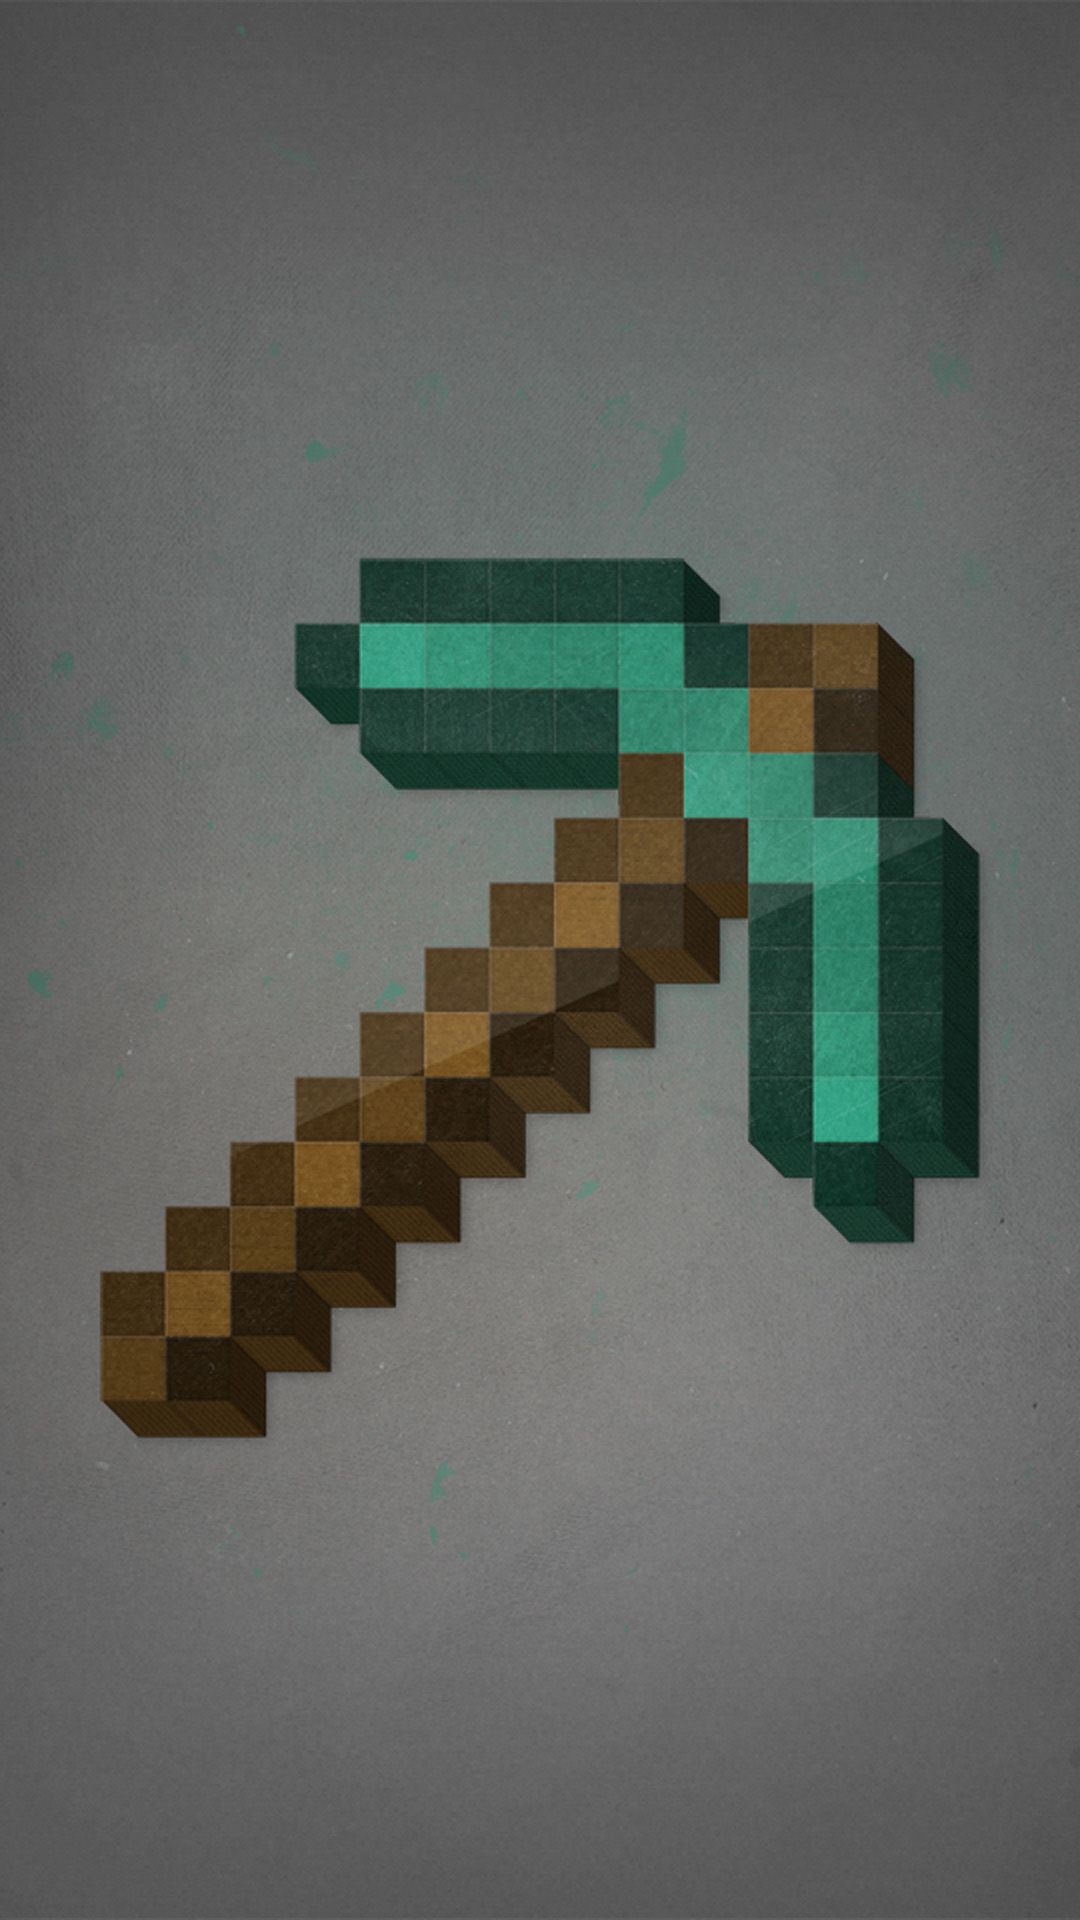 minecraft wallpaper diamond axe